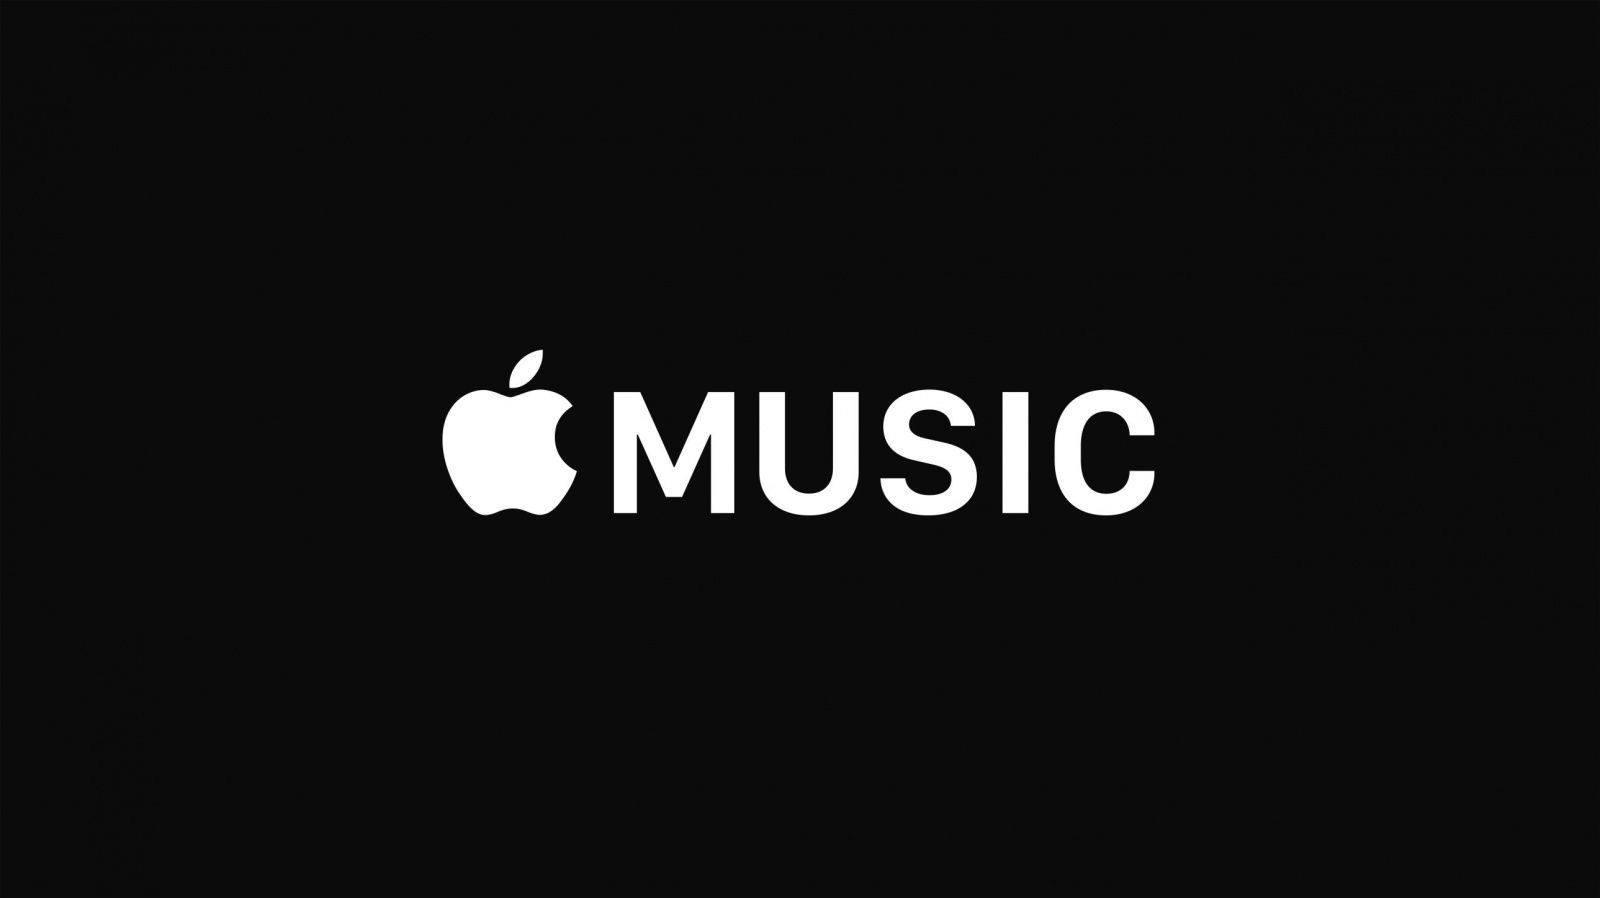 Go:Audio - Apple Music